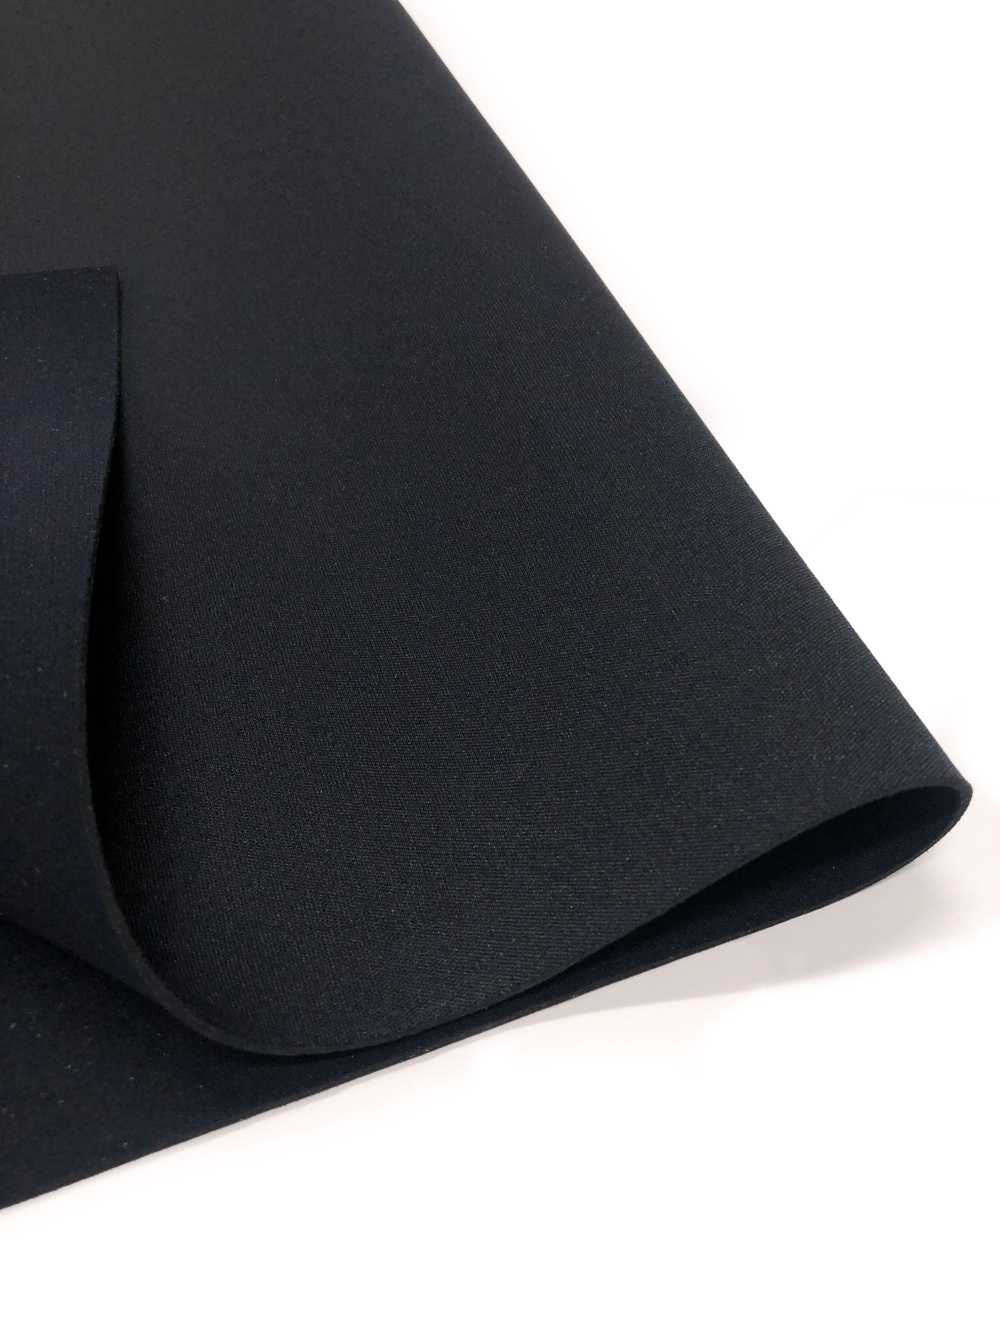 31188 HM AL Negro/PS Negro 95 × 170cm[Fabrica Textil] Tortuga